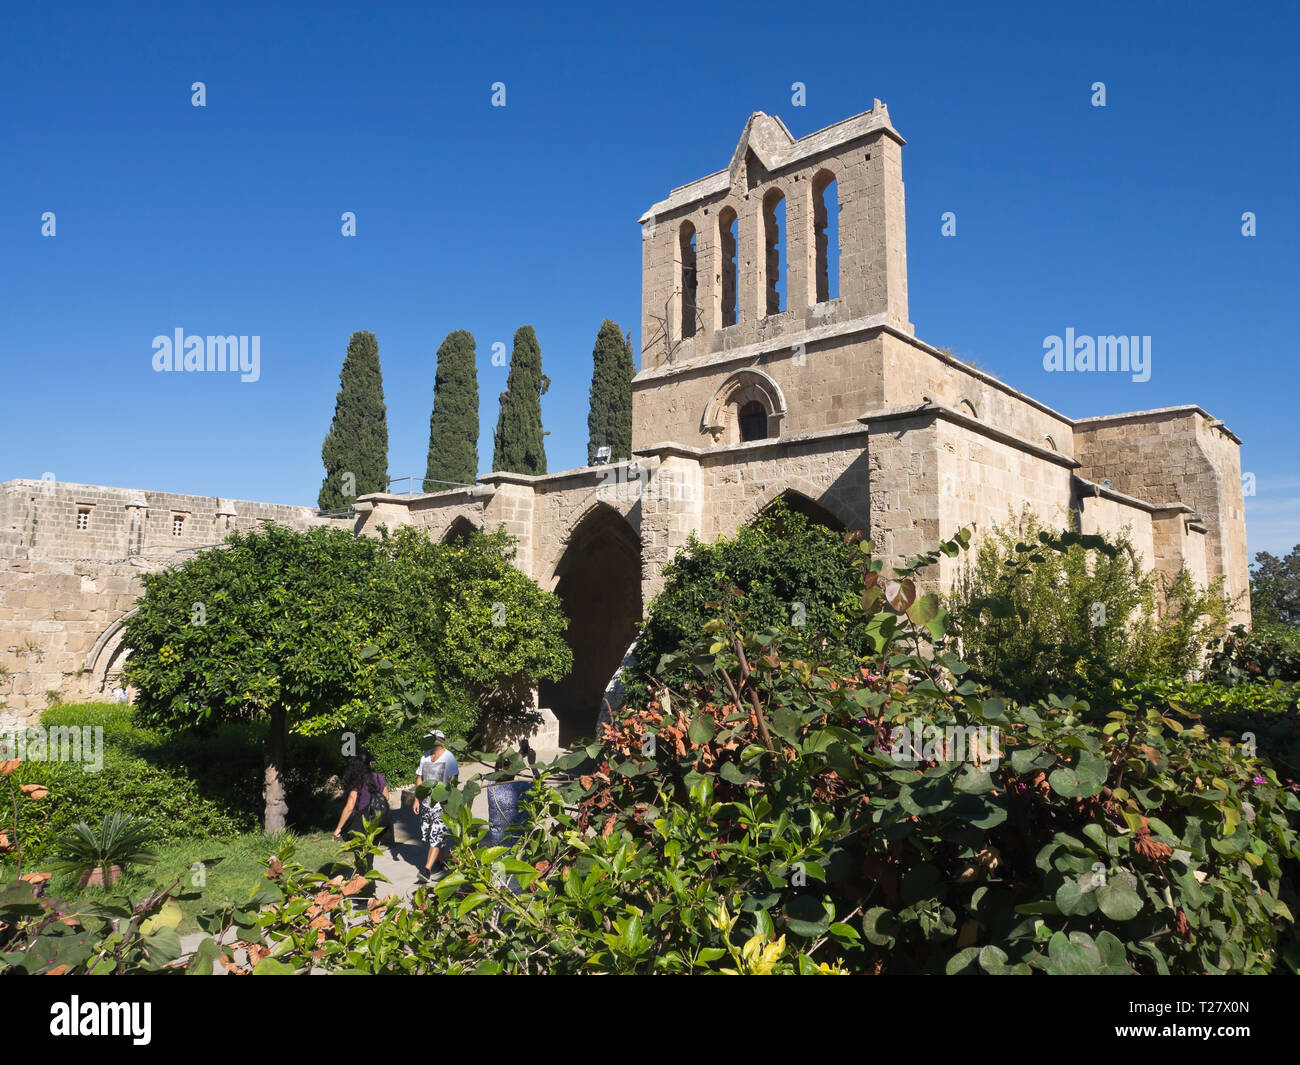 Bellapais Abbey eine touristische Attraktion in Nordzypern mit gotische Ruinen, eine schöne orthodoxe Kirche und üppigen Garten Stockfoto